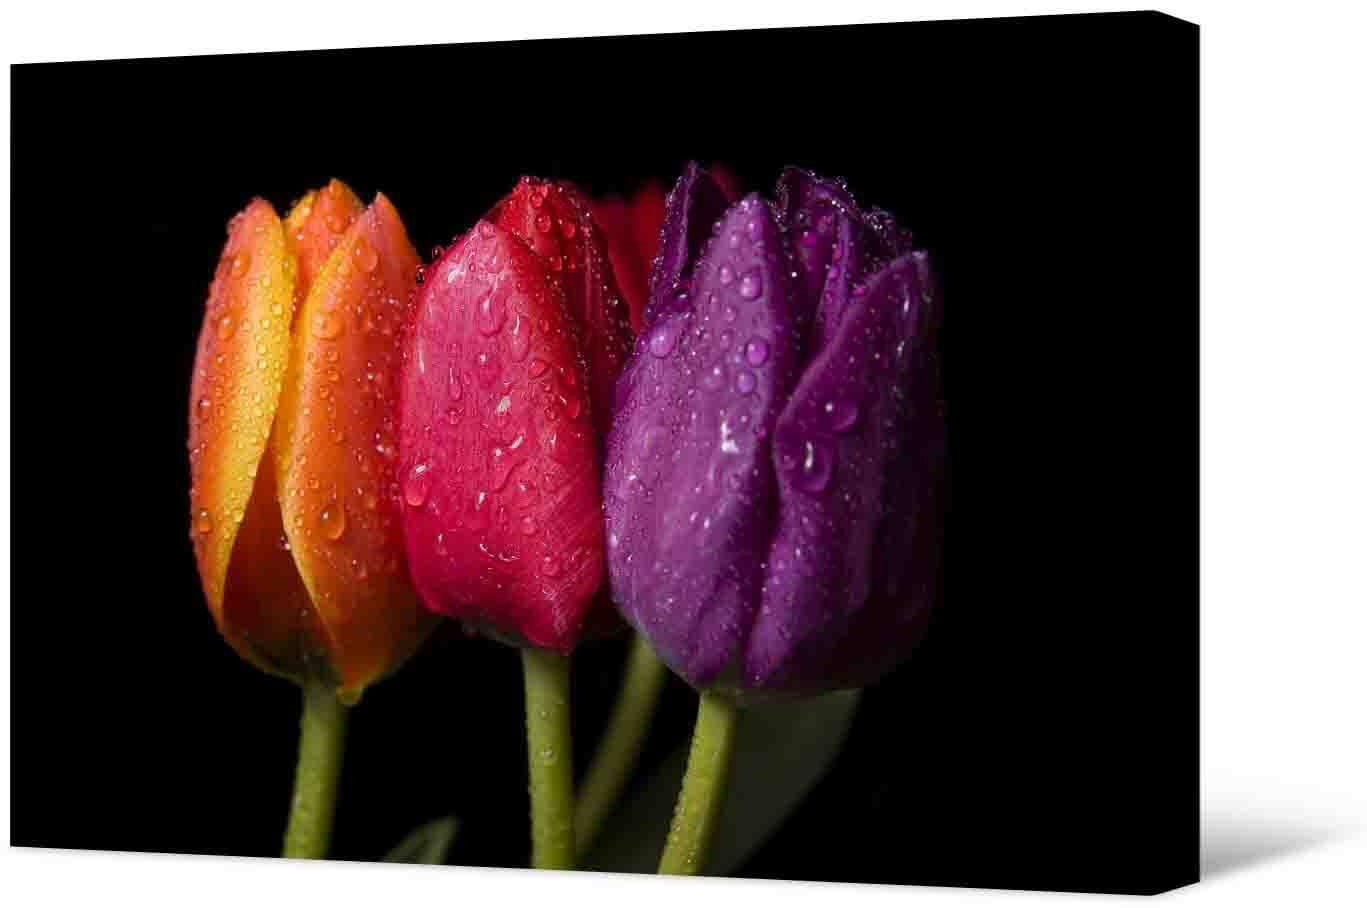 Nuotraukoje - gražios tulpės